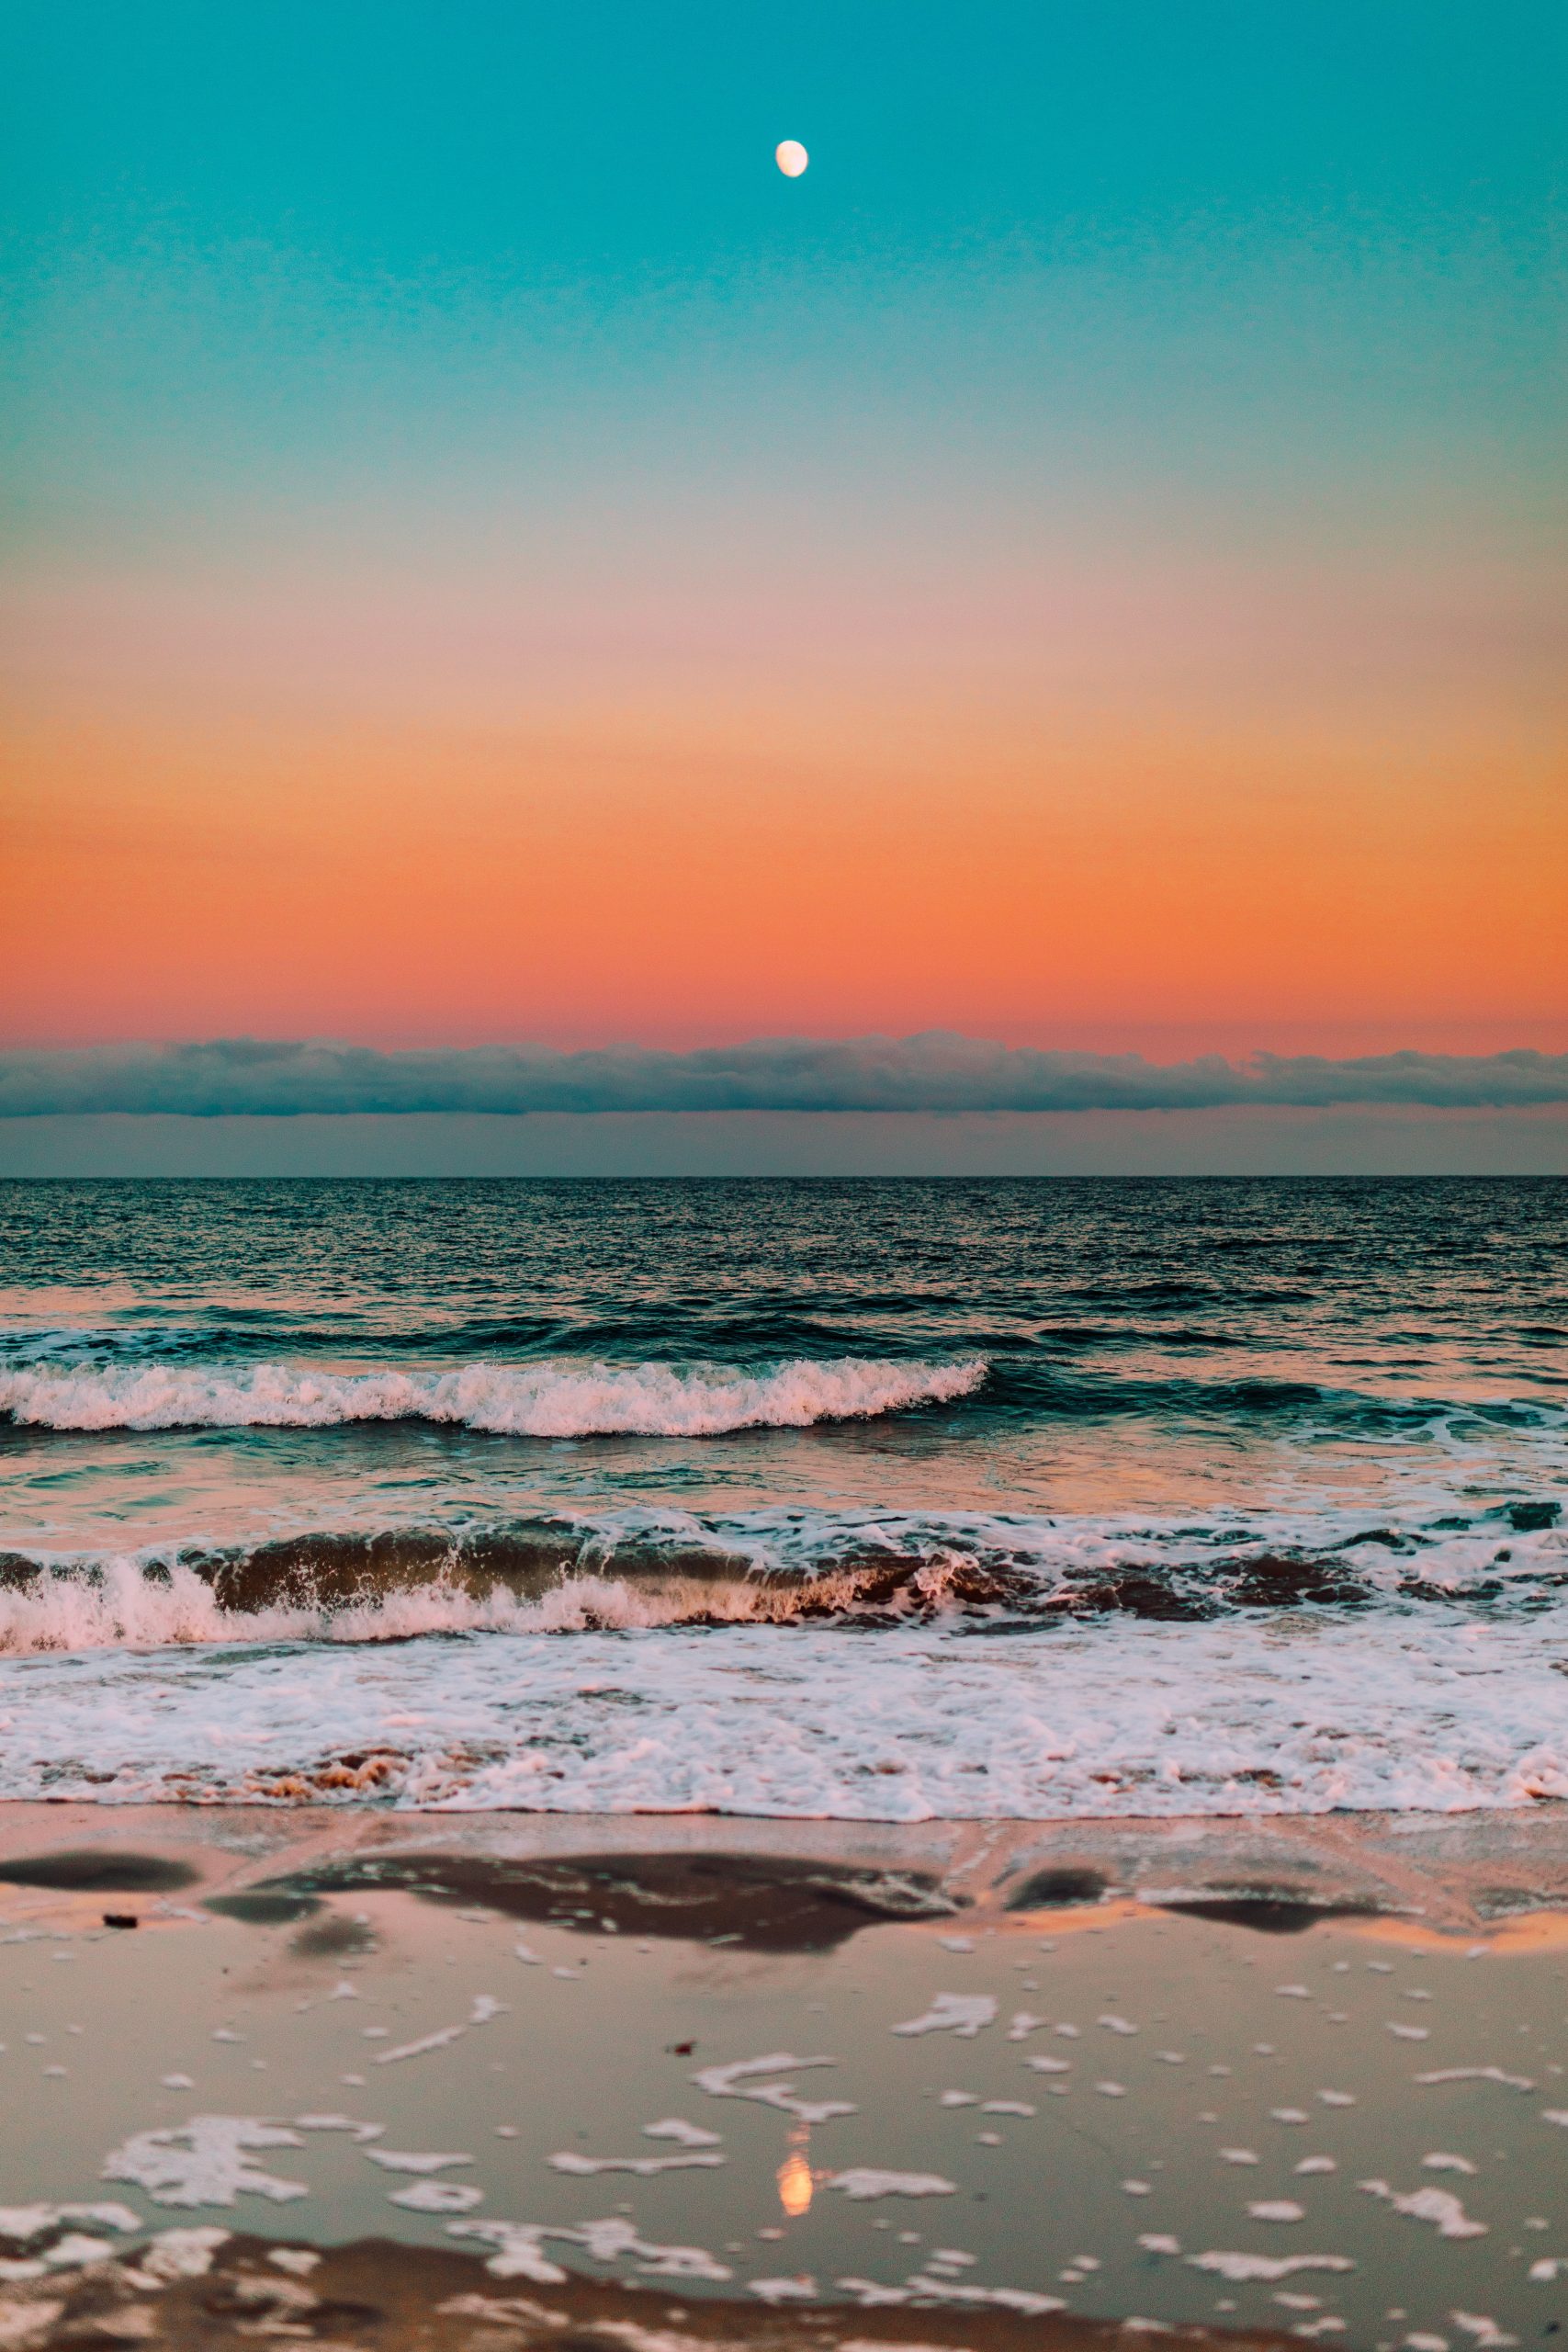 Hoàng hôn biển: Chỉ với những bức ảnh hoàng hôn biển tuyệt đẹp, bạn sẽ được tận hưởng khung cảnh lãng mạn của biển cả khi mặt trời lặn. Hãy dừng lại và đắm mình vào khoảnh khắc đó, cùng cảm nhận sự hòa quyện giữa nắng và gió, một cảm giác tuyệt vời.